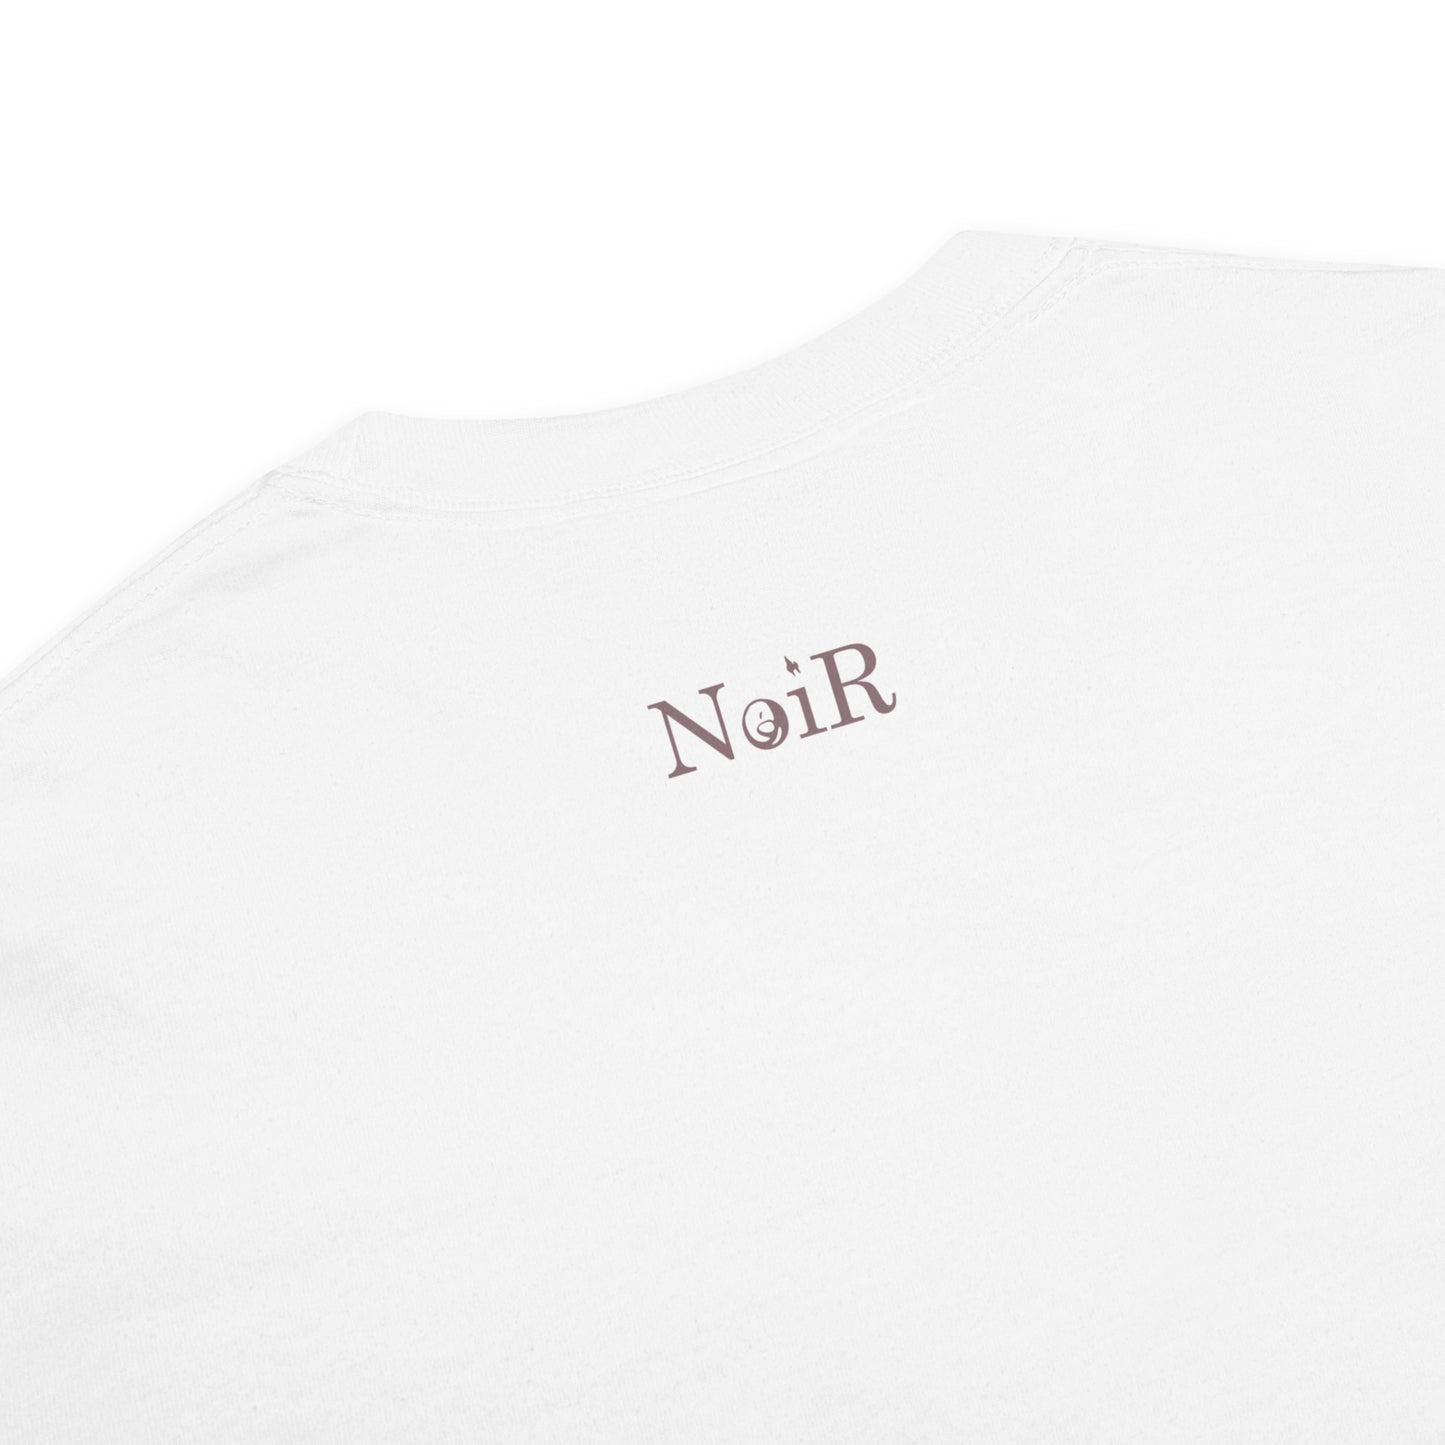 NoiR Original Series L001 "abStrACT" Premium Heavyweight T-Shirt